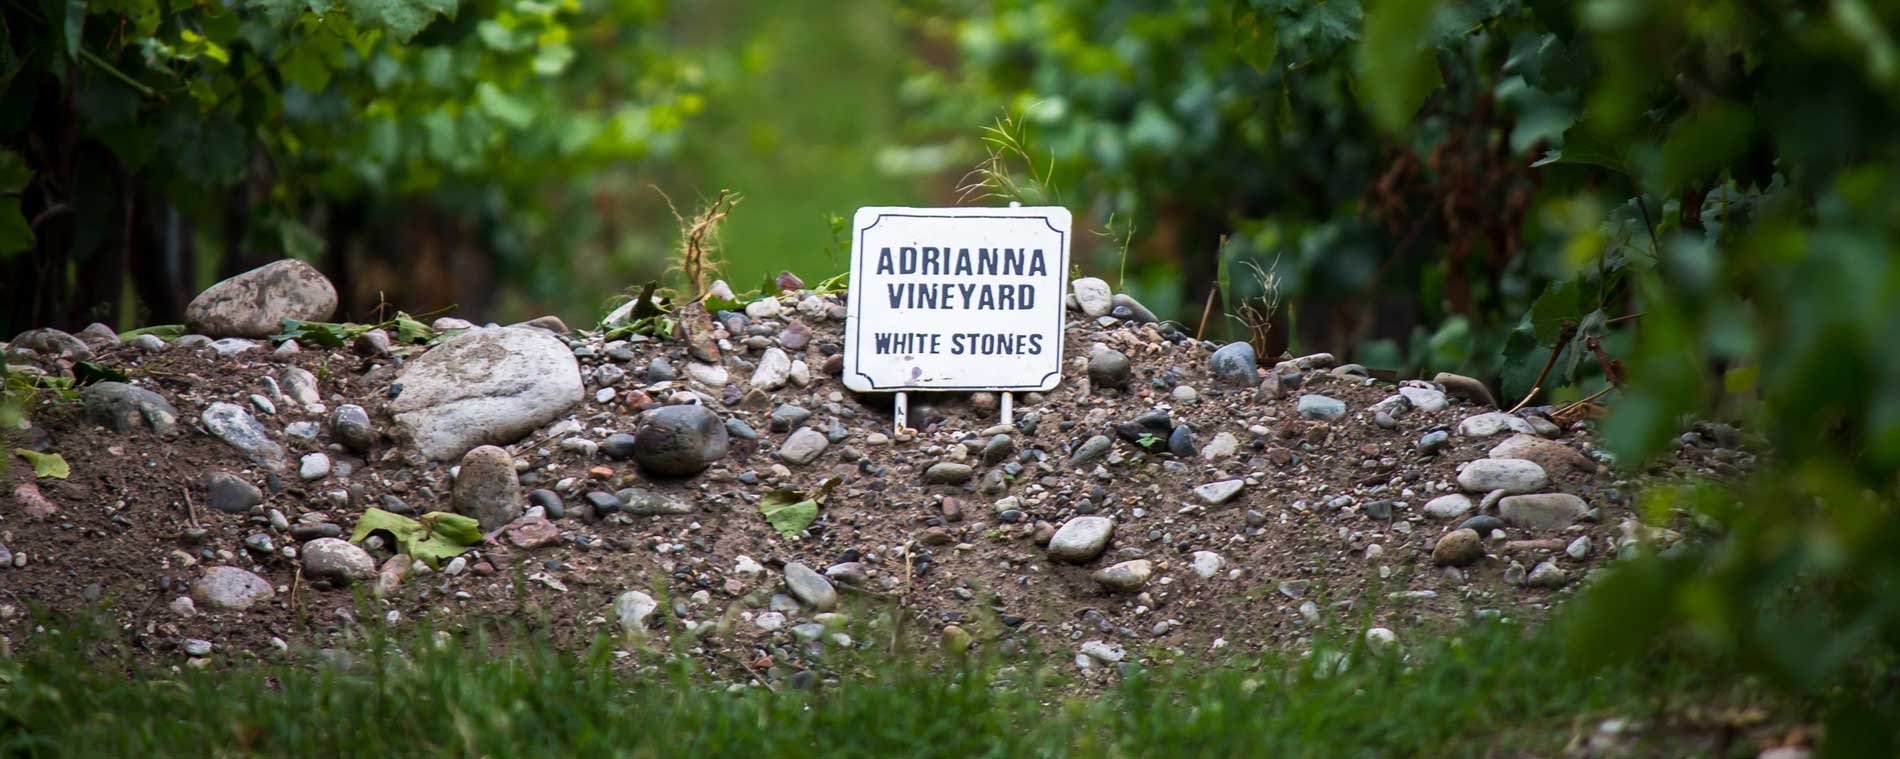 adrianna vineyard white stones parcel